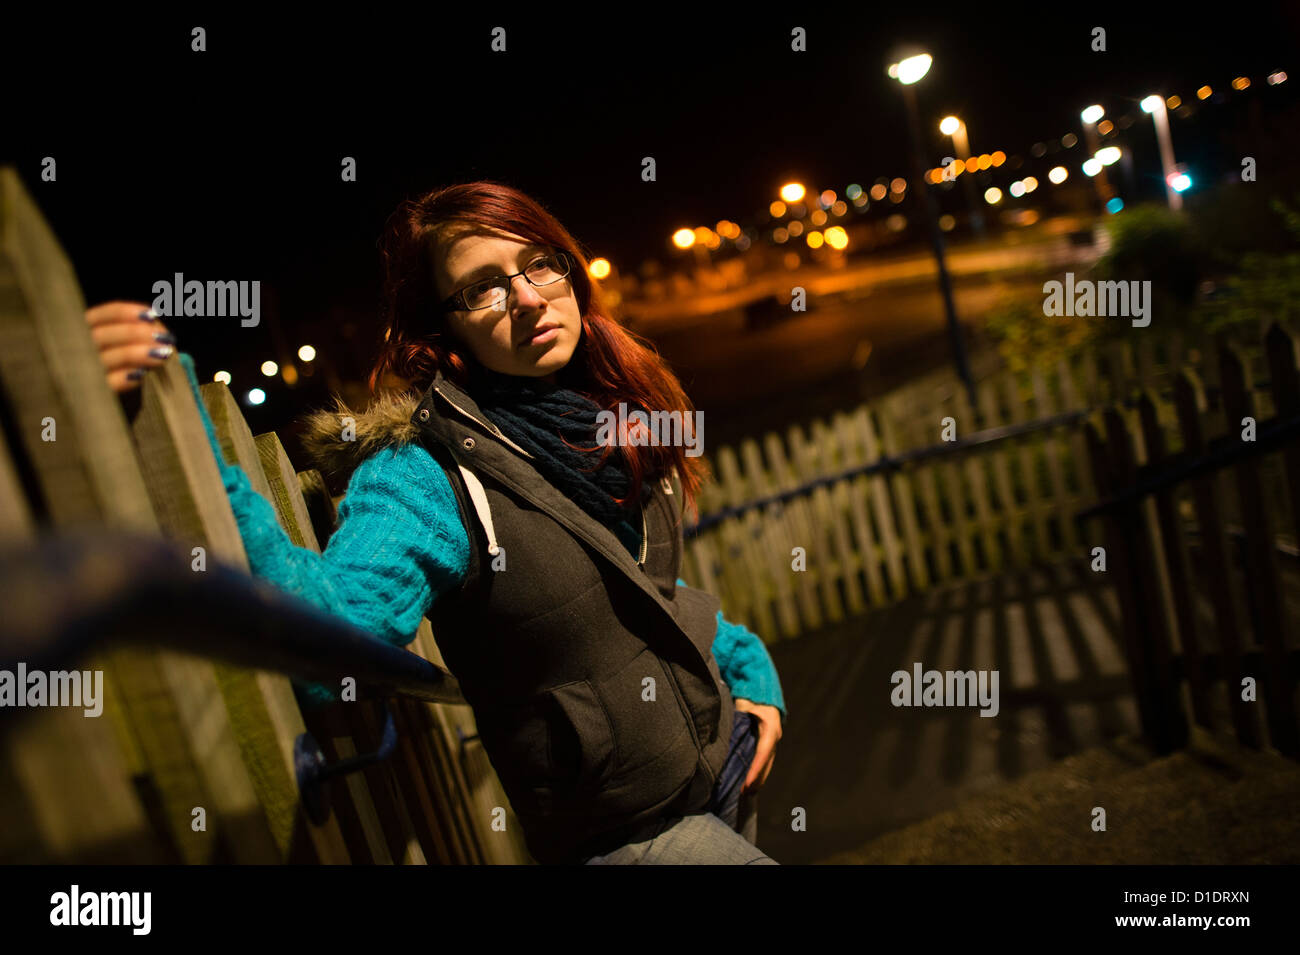 Une jeune femme adolescente personne seule dans une ville de la zone urbaine de la ville de nuit, UK Banque D'Images